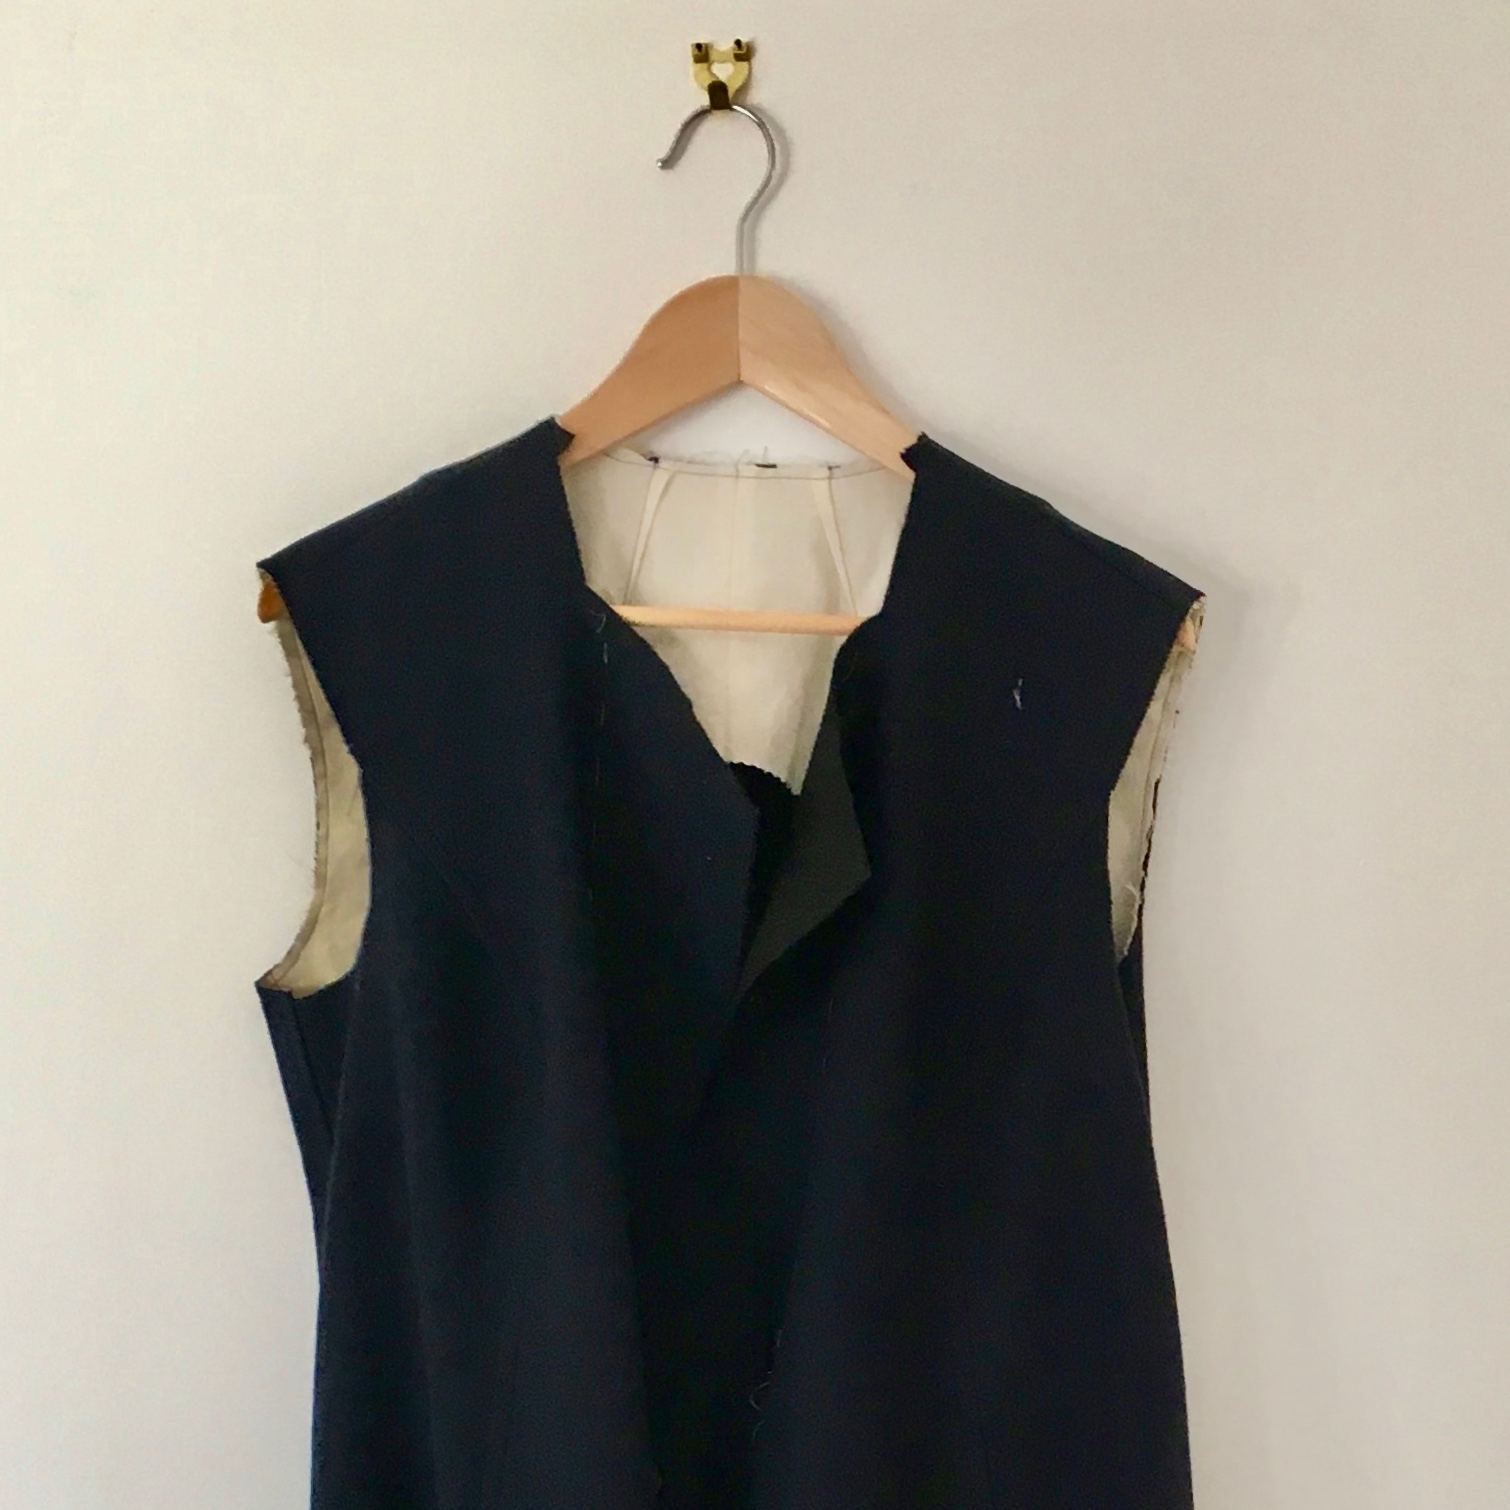 Tailoring for beginners: inside my Rumana coat – DIY Wardrobe